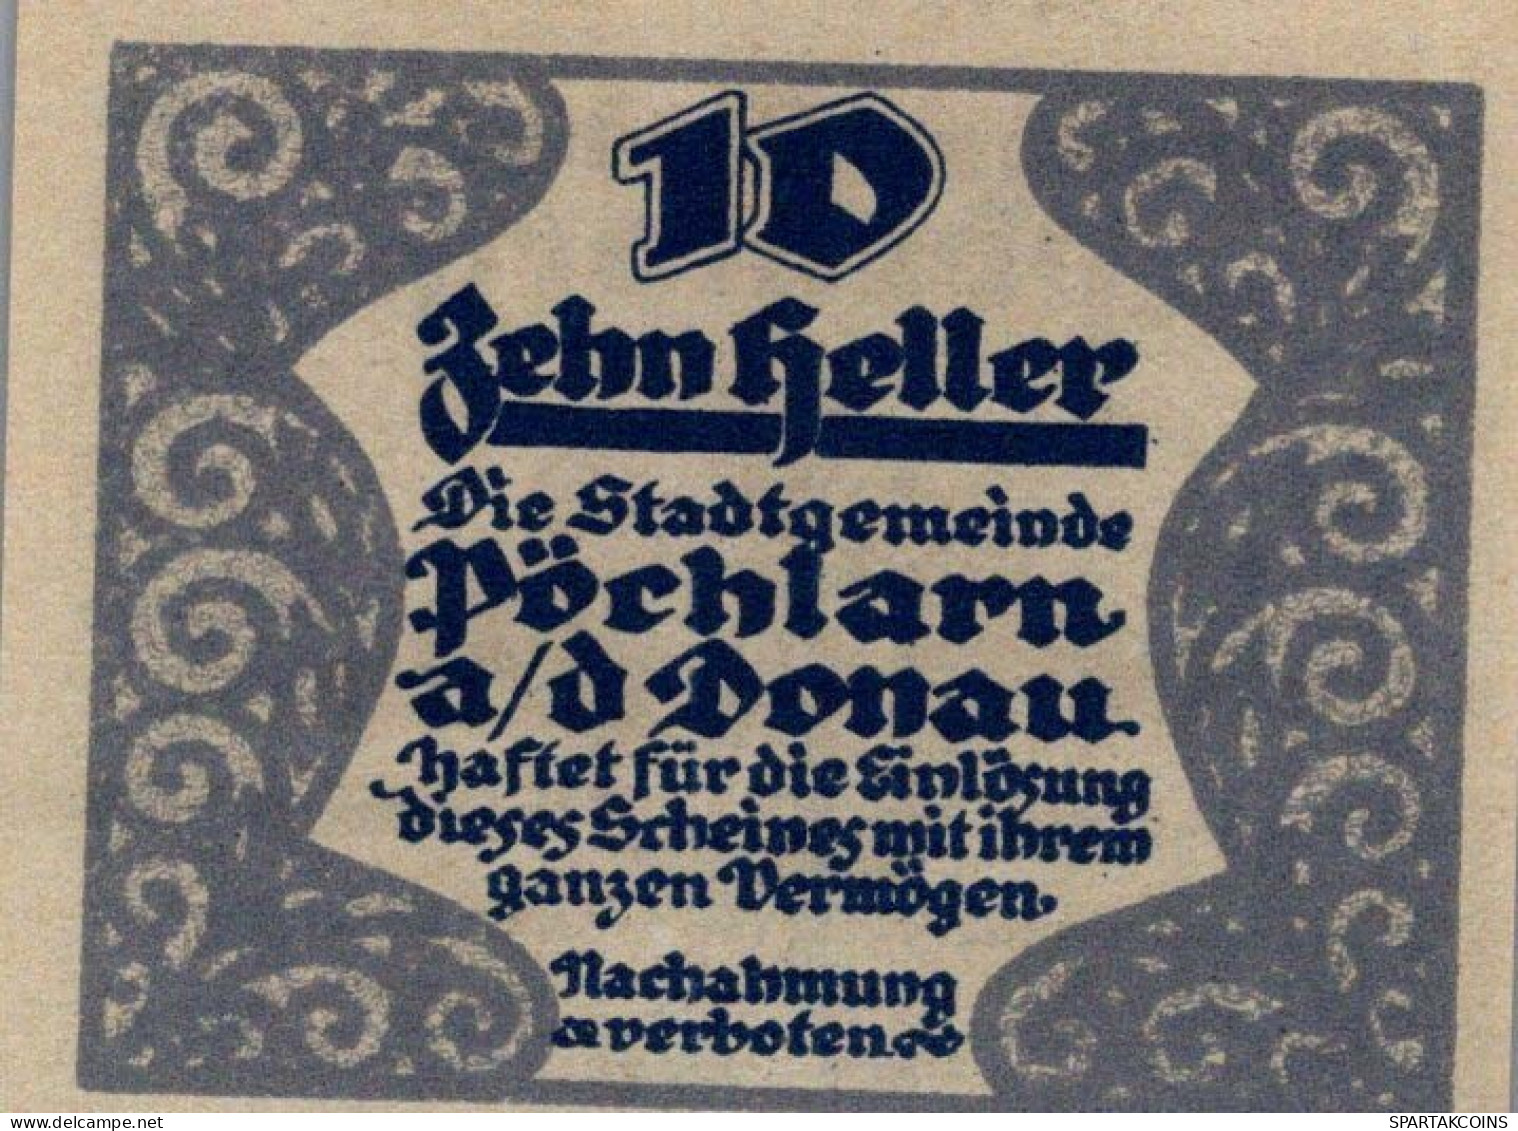 10 HELLER 1920 Stadt PoCHLARN Niedrigeren Österreich UNC Österreich Notgeld #PH562 - [11] Lokale Uitgaven